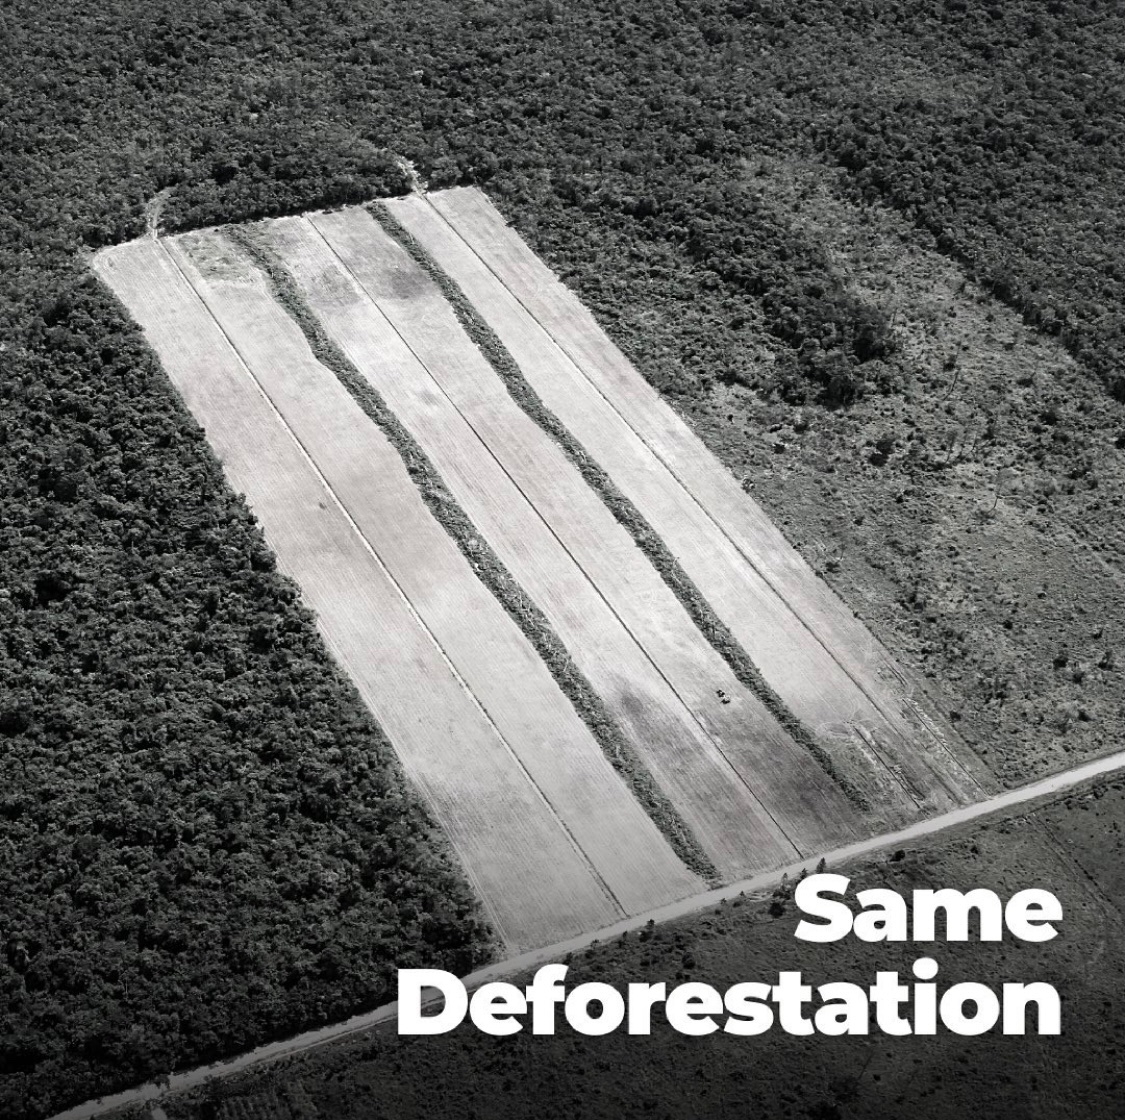 SAME deforestation.